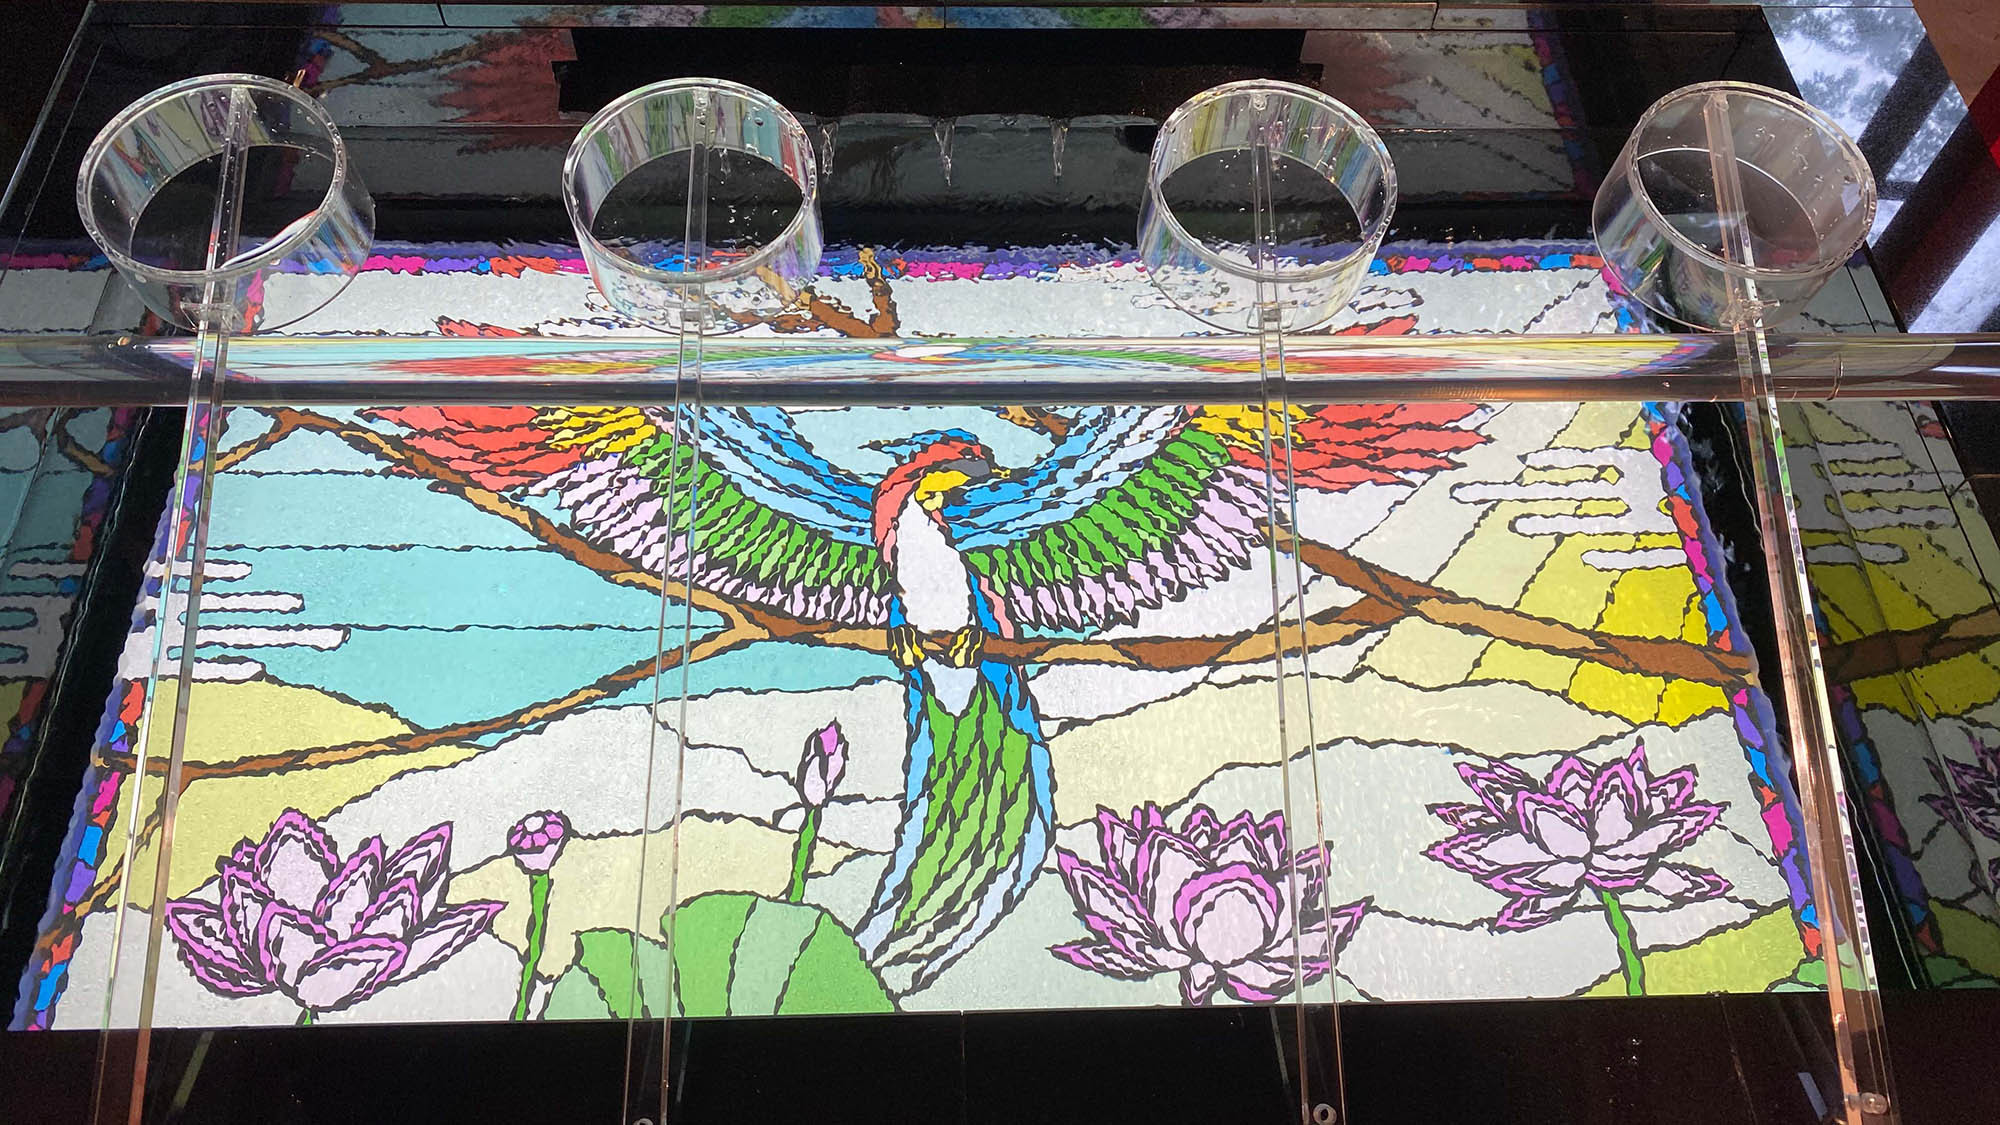 ・【極楽橋駅】極楽鳥や高野山ゆかりの動植物が描かれた駅内の壁画